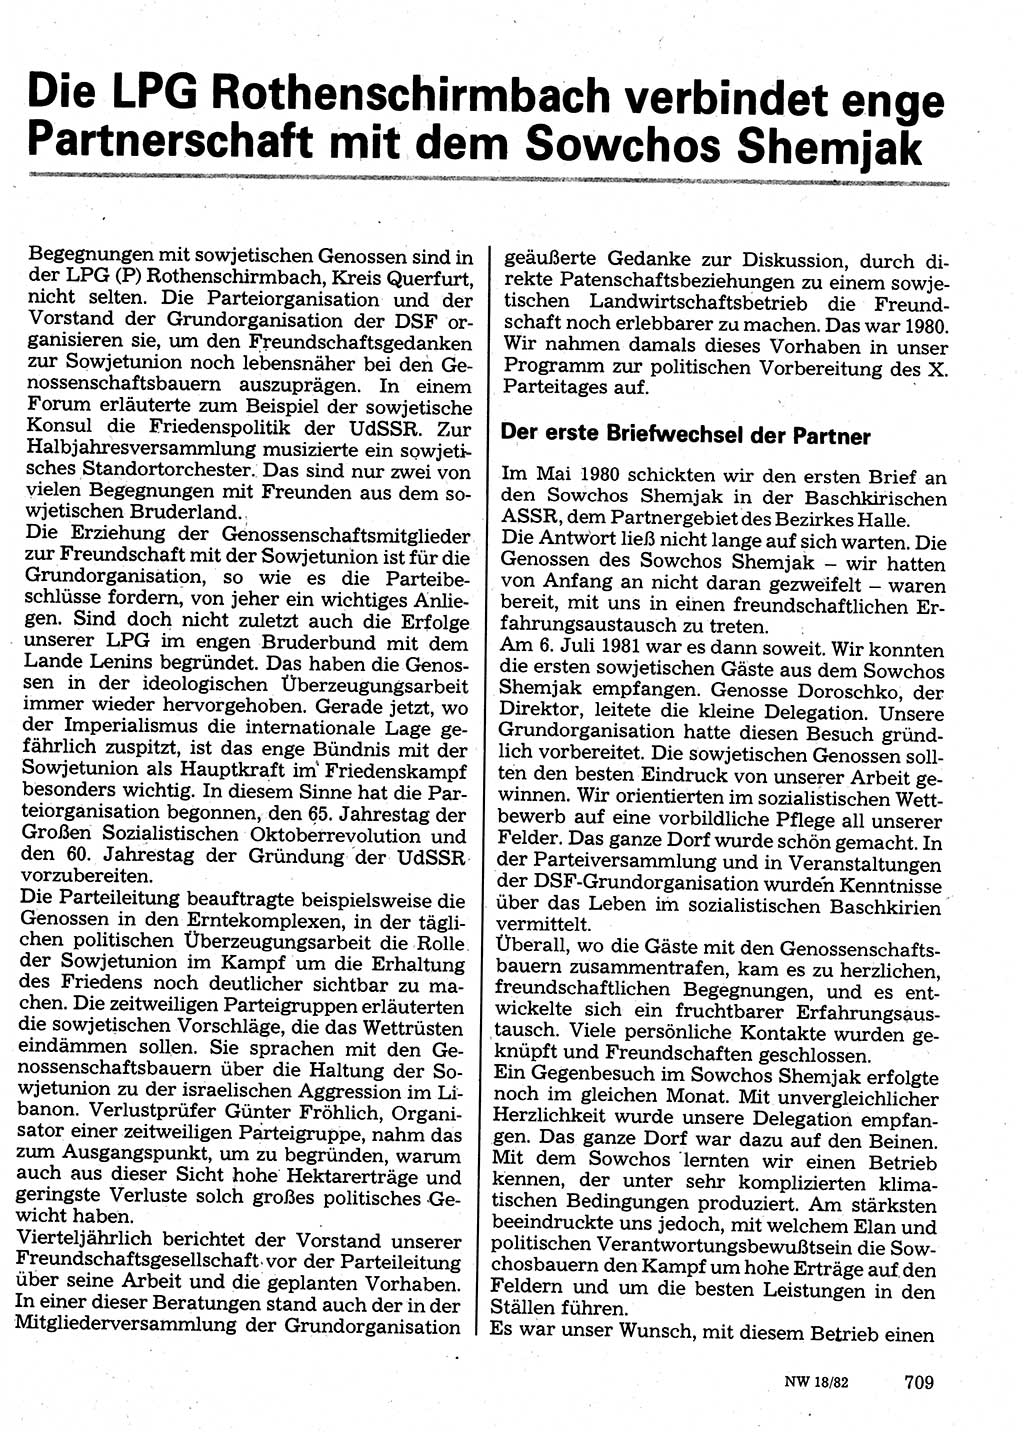 Neuer Weg (NW), Organ des Zentralkomitees (ZK) der SED (Sozialistische Einheitspartei Deutschlands) für Fragen des Parteilebens, 37. Jahrgang [Deutsche Demokratische Republik (DDR)] 1982, Seite 709 (NW ZK SED DDR 1982, S. 709)